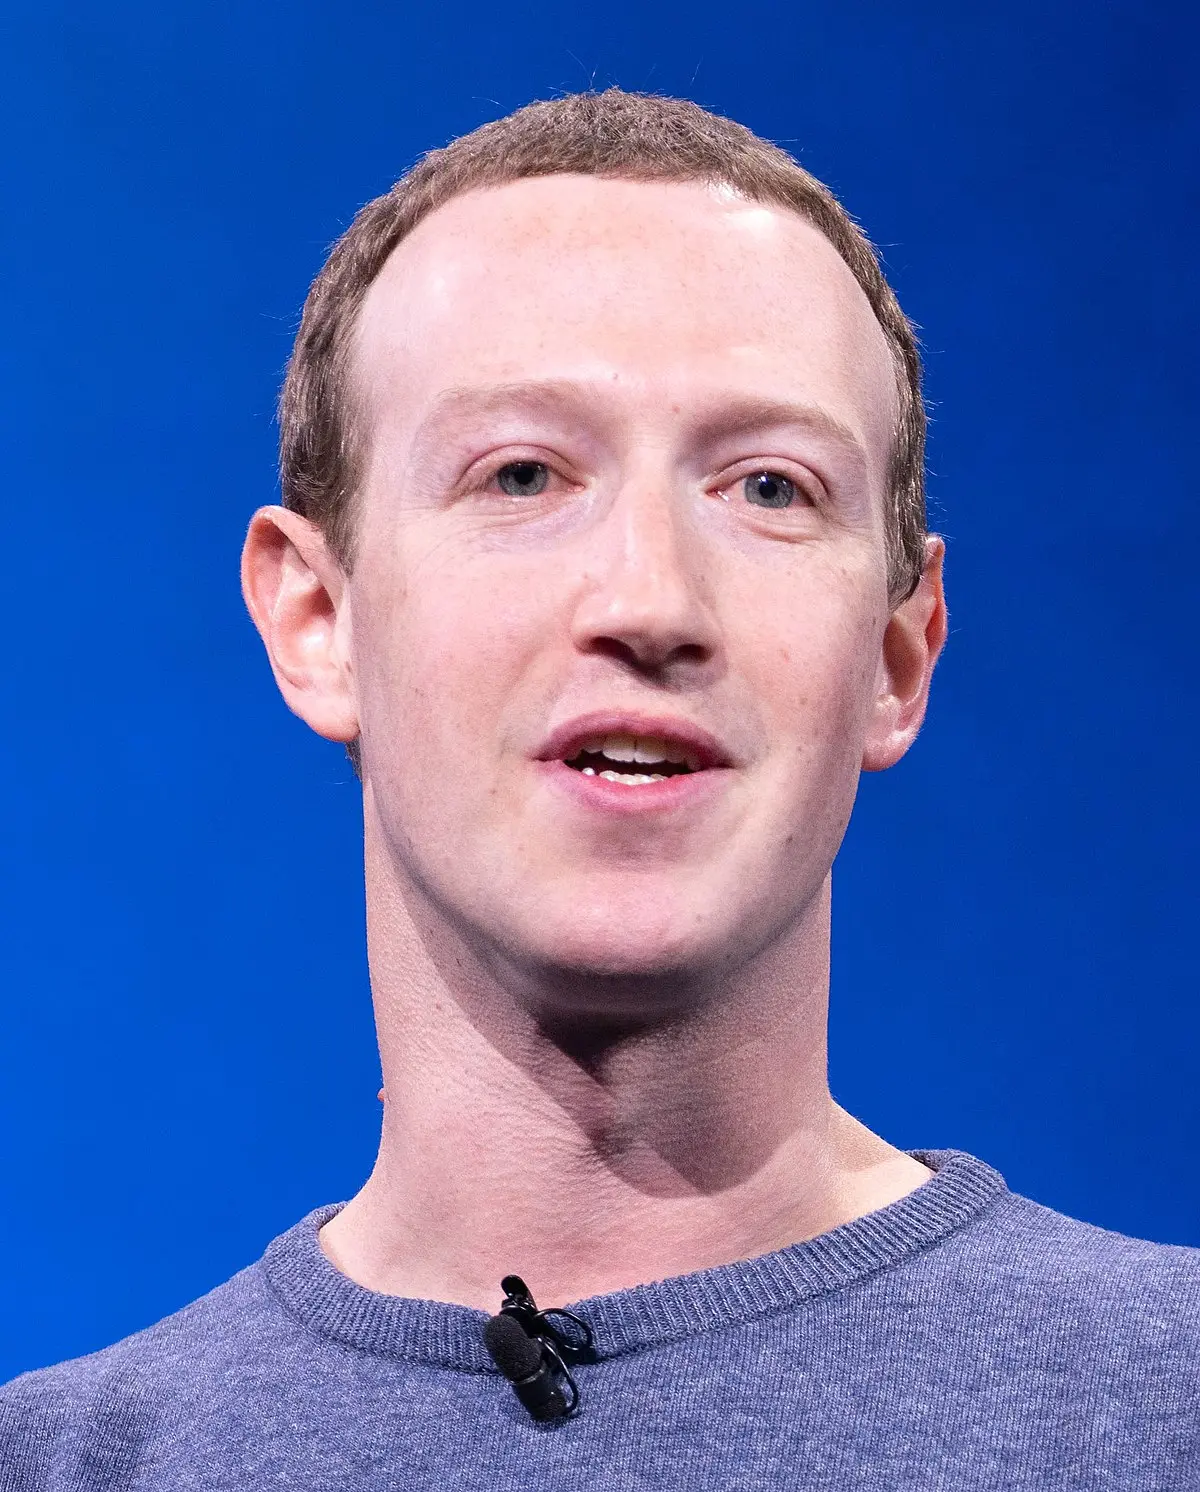 mark zuckerberg crea inteligencia artificial - Qué fue lo más importante que hizo Mark Zuckerberg